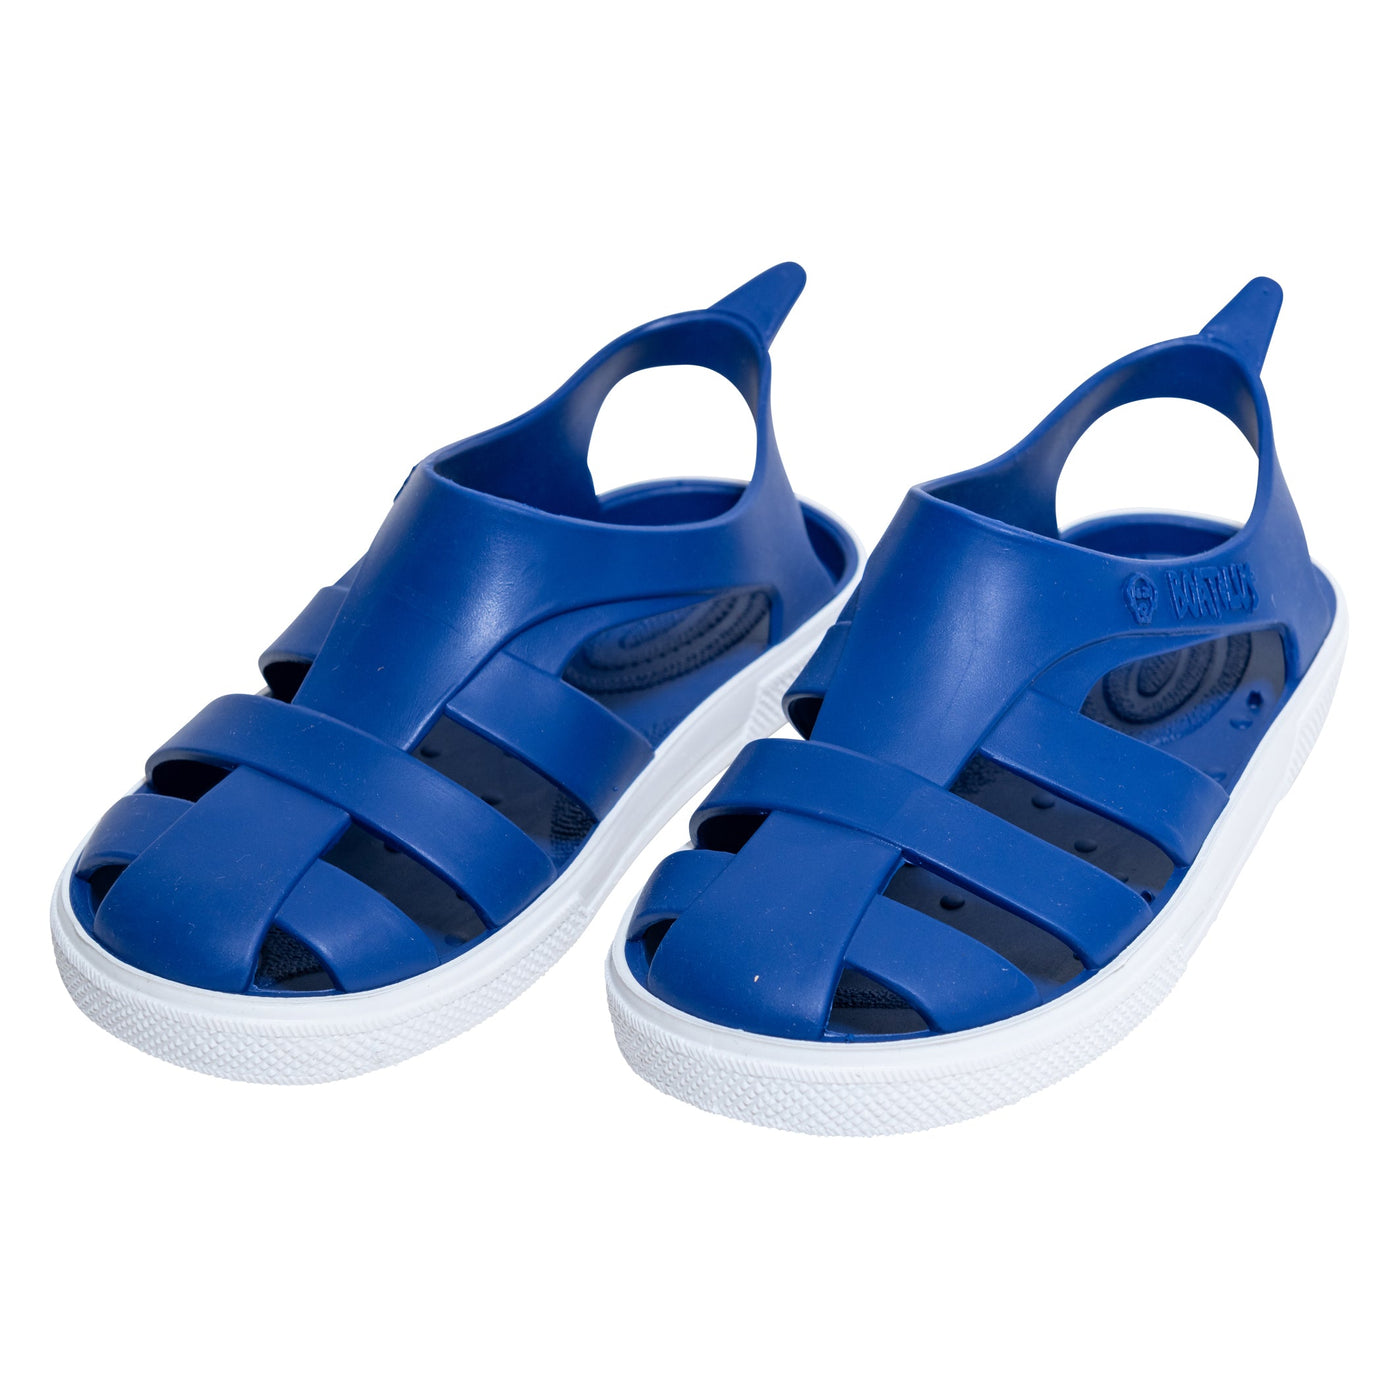 Boatilus Bioty Sandal Blue